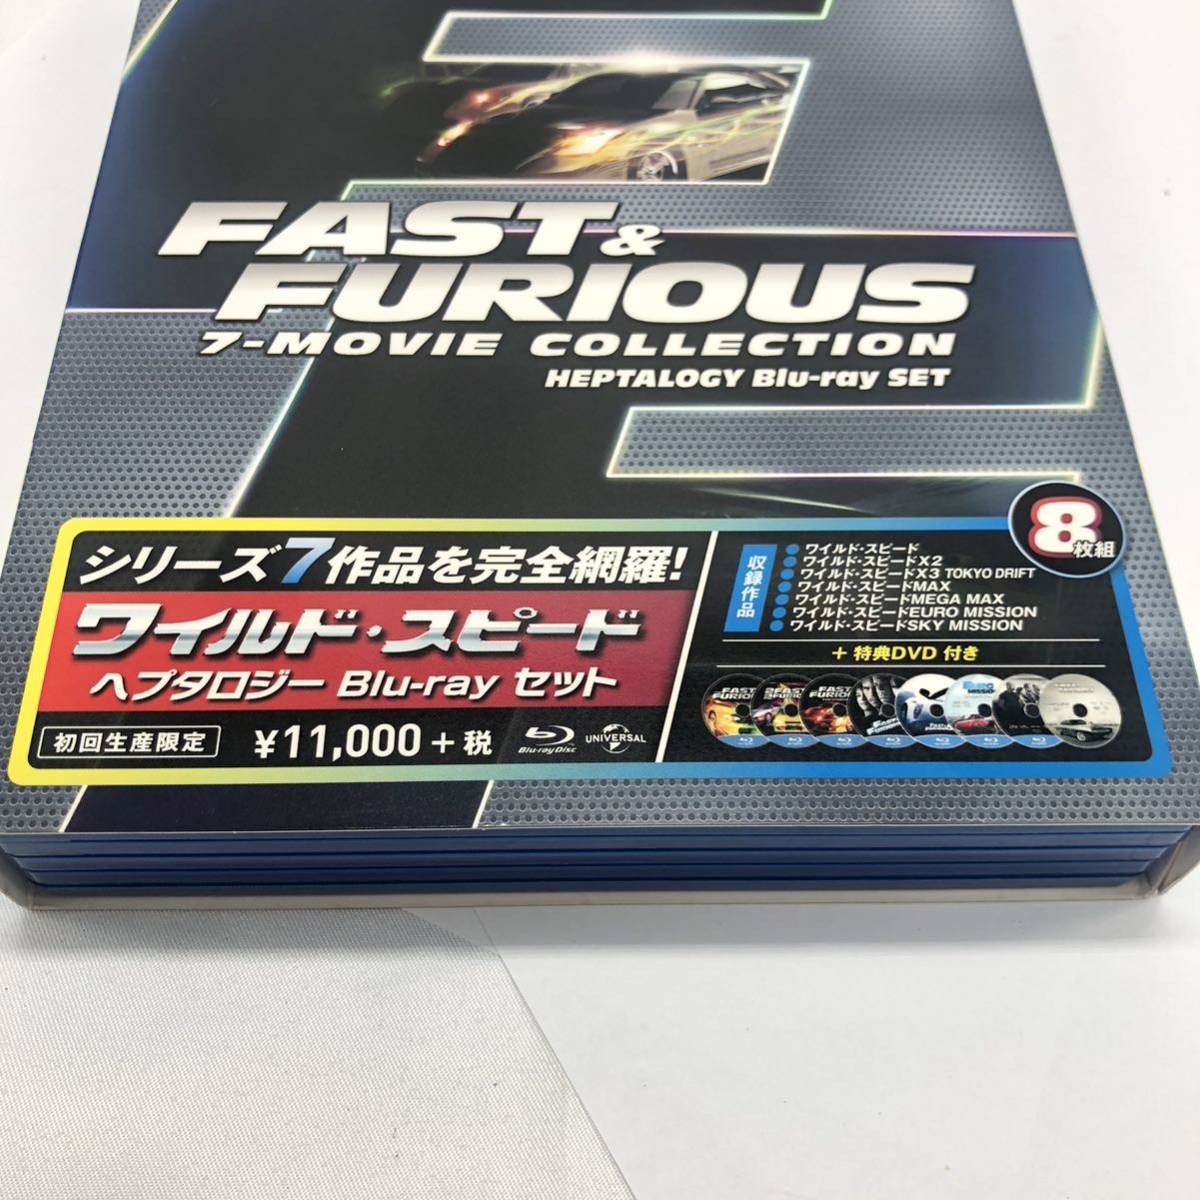 ワイルドスピードFURIOUS 初回生産Blu-ray 7枚セット特典DVD1枚付計:8